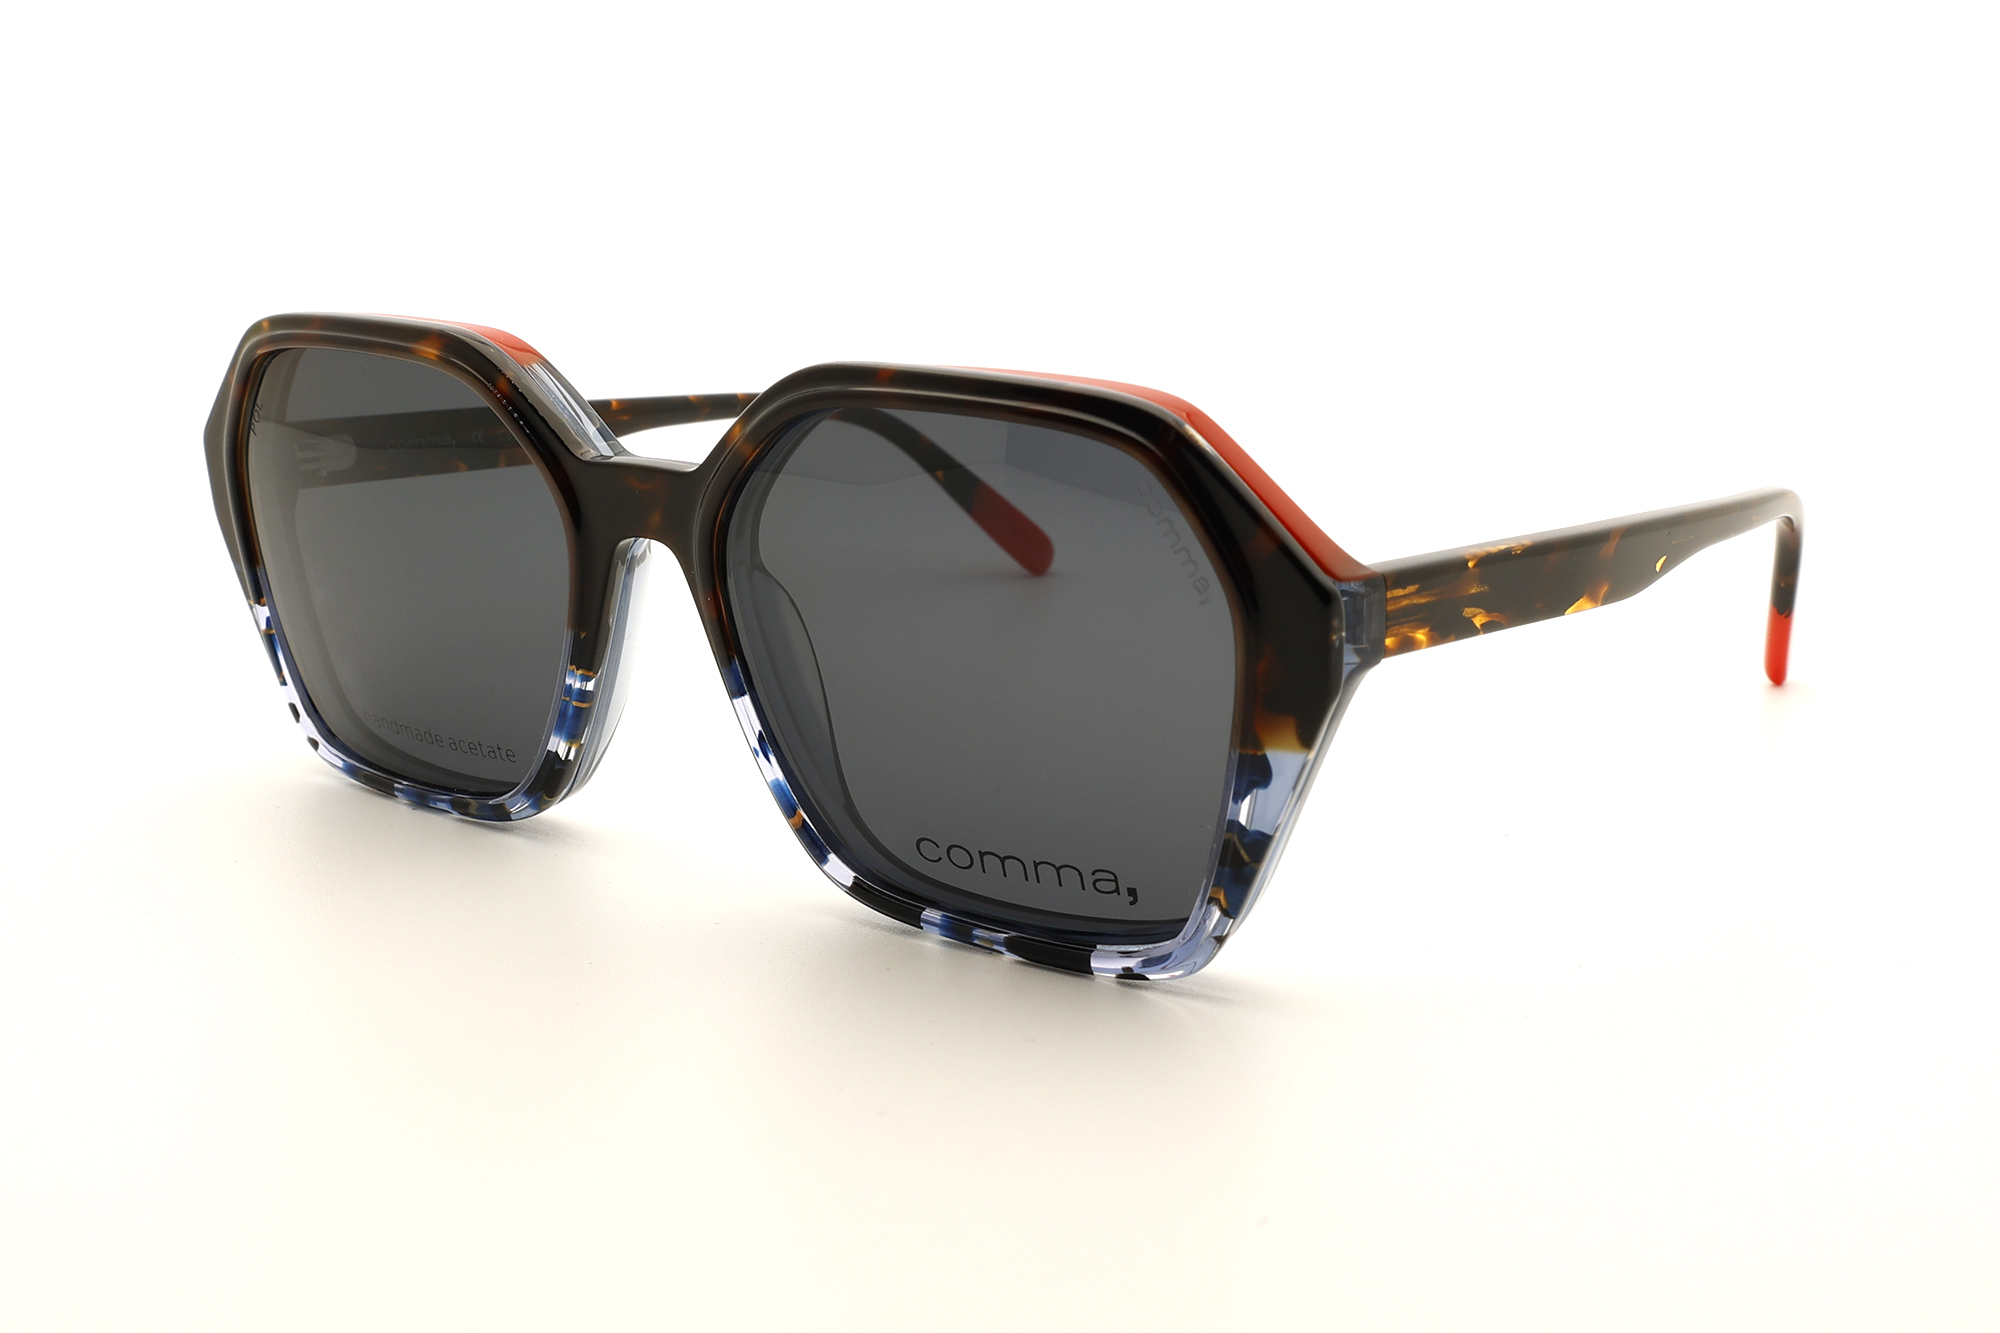 Ceolup Sonnenbrillenhalter Clip Magnetische Brille Brillenbügel Clip Für  Auto, Universal Auto Sonnenbrillen Halter Für Sonnenbrillen